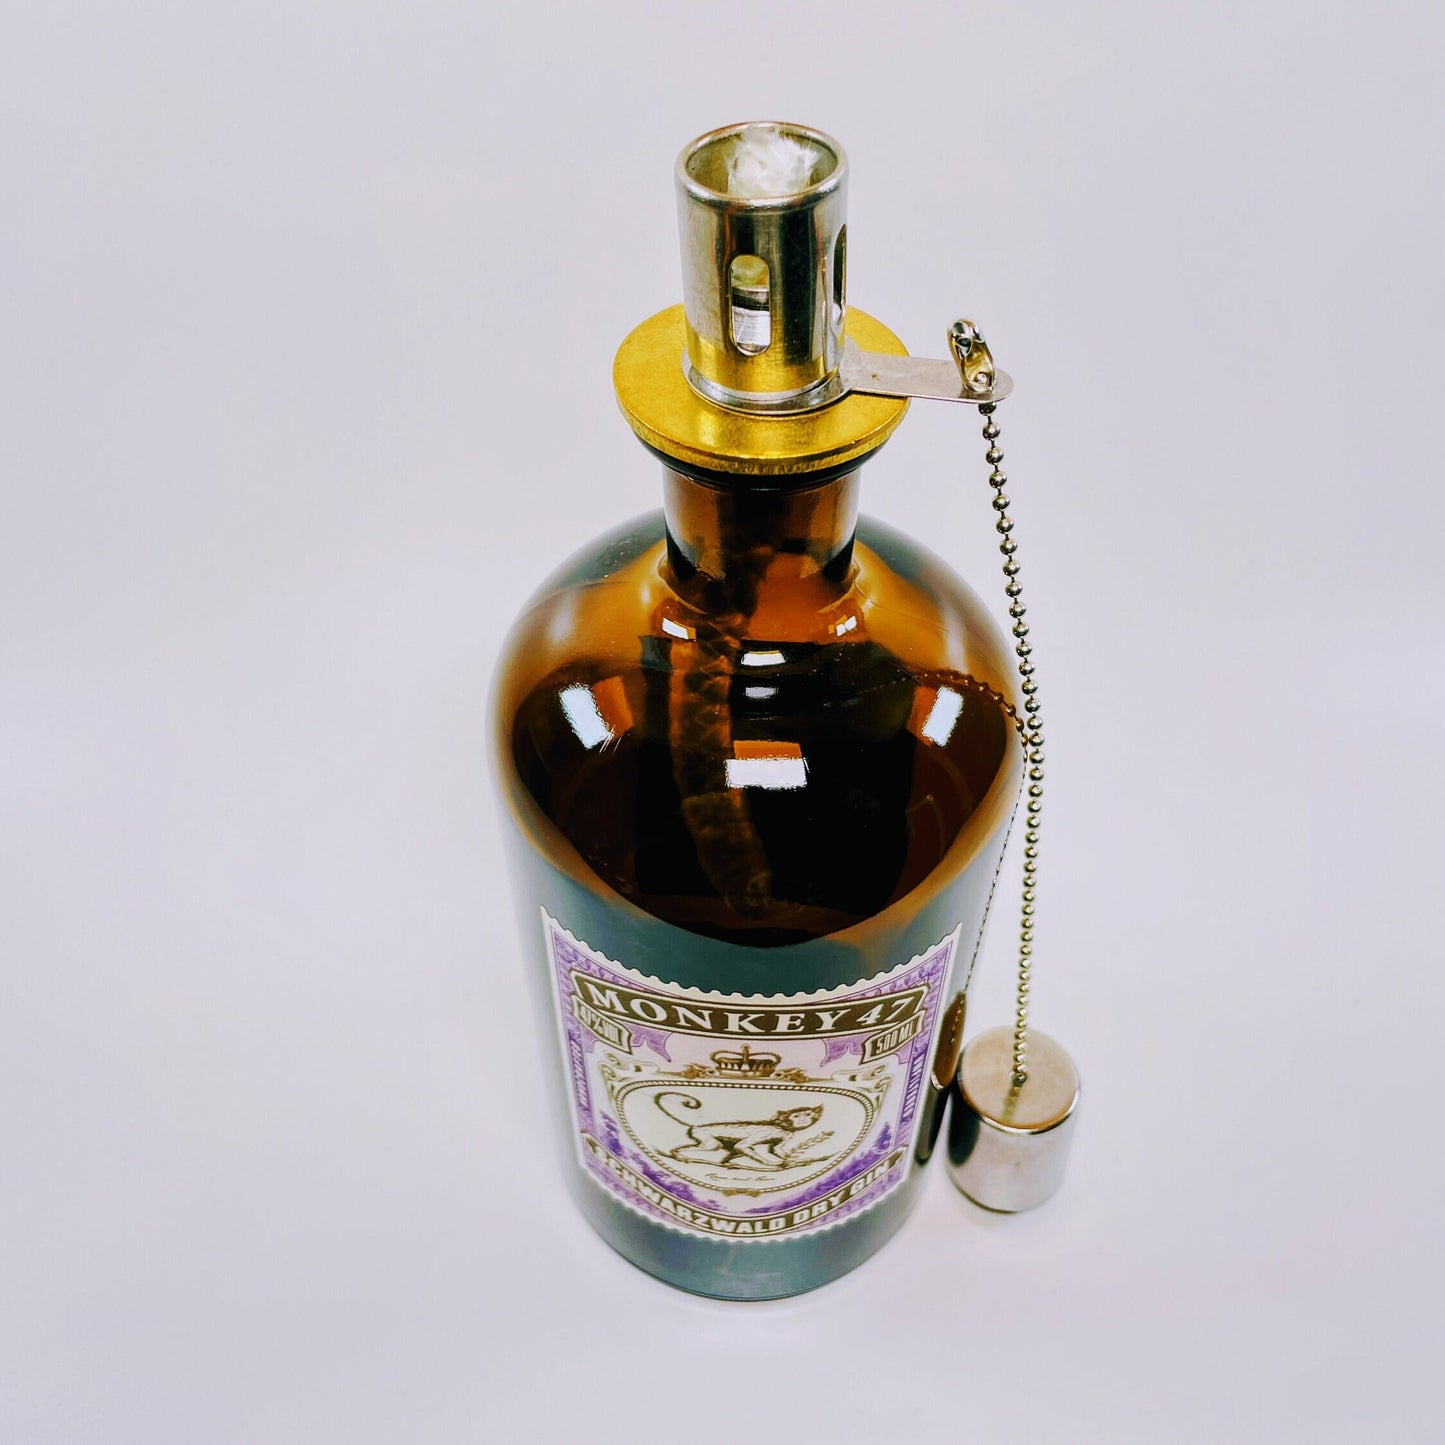 Gin Öllampe "Monkey 47" | Handgemachte Öllampe aus Monkey 47 Flaschen | Upcycling | Handgefertigt | Individuell | Geschenk | Deko | H:21cm